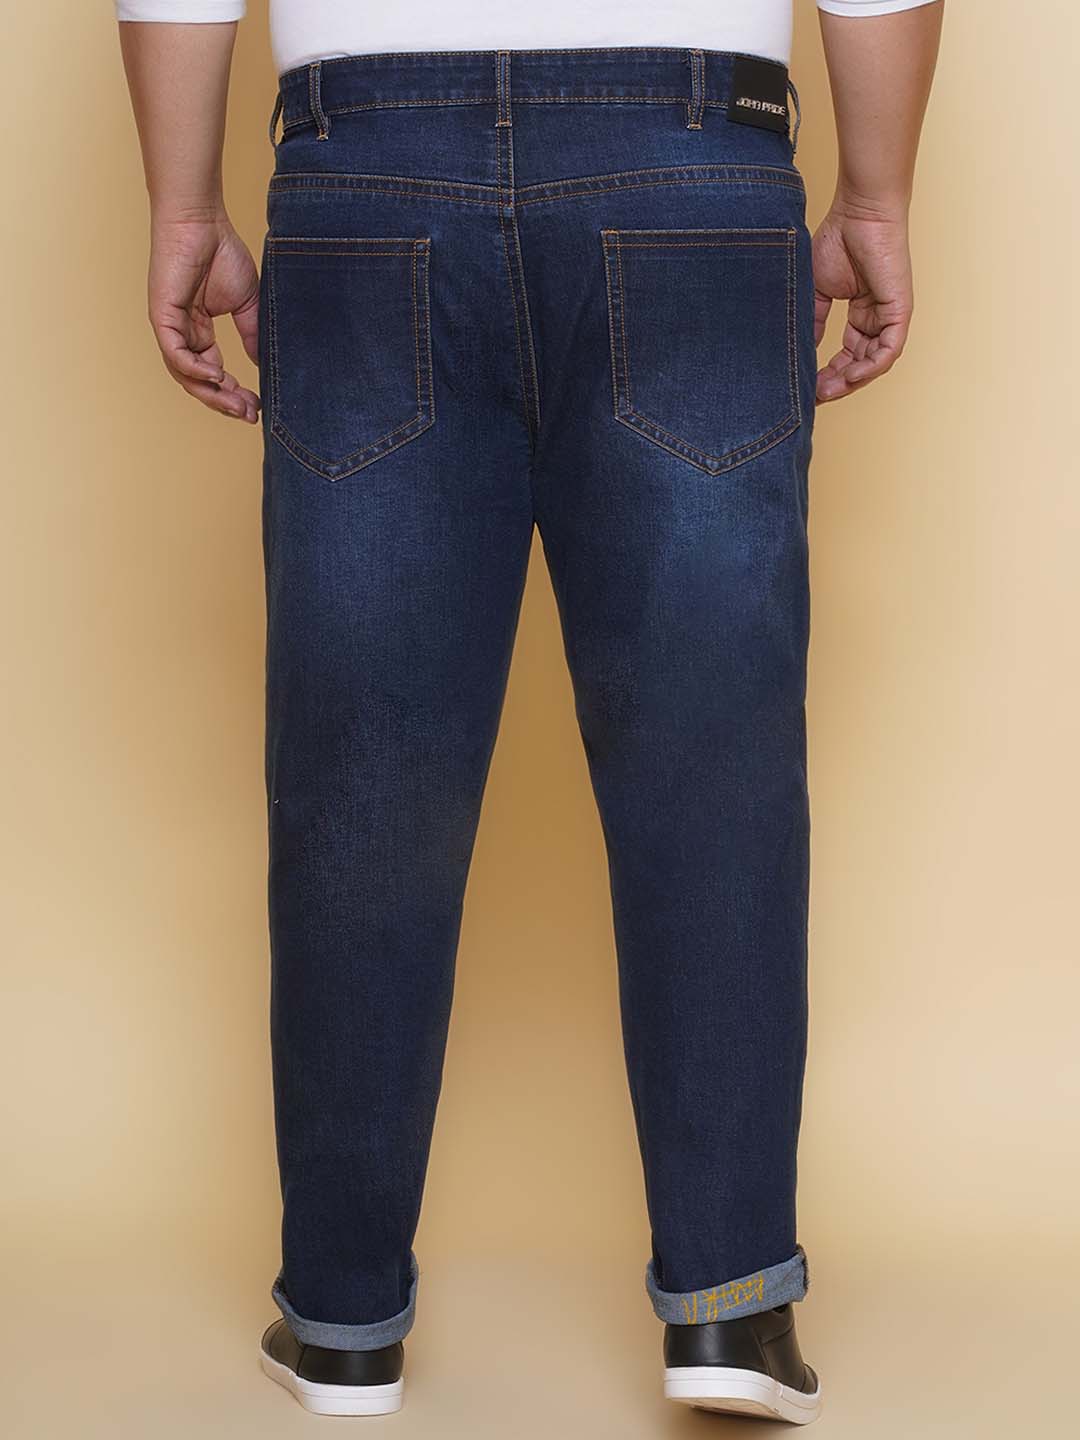 bottomwear/jeans/PJPJ60102/pjpj60102-5.jpg